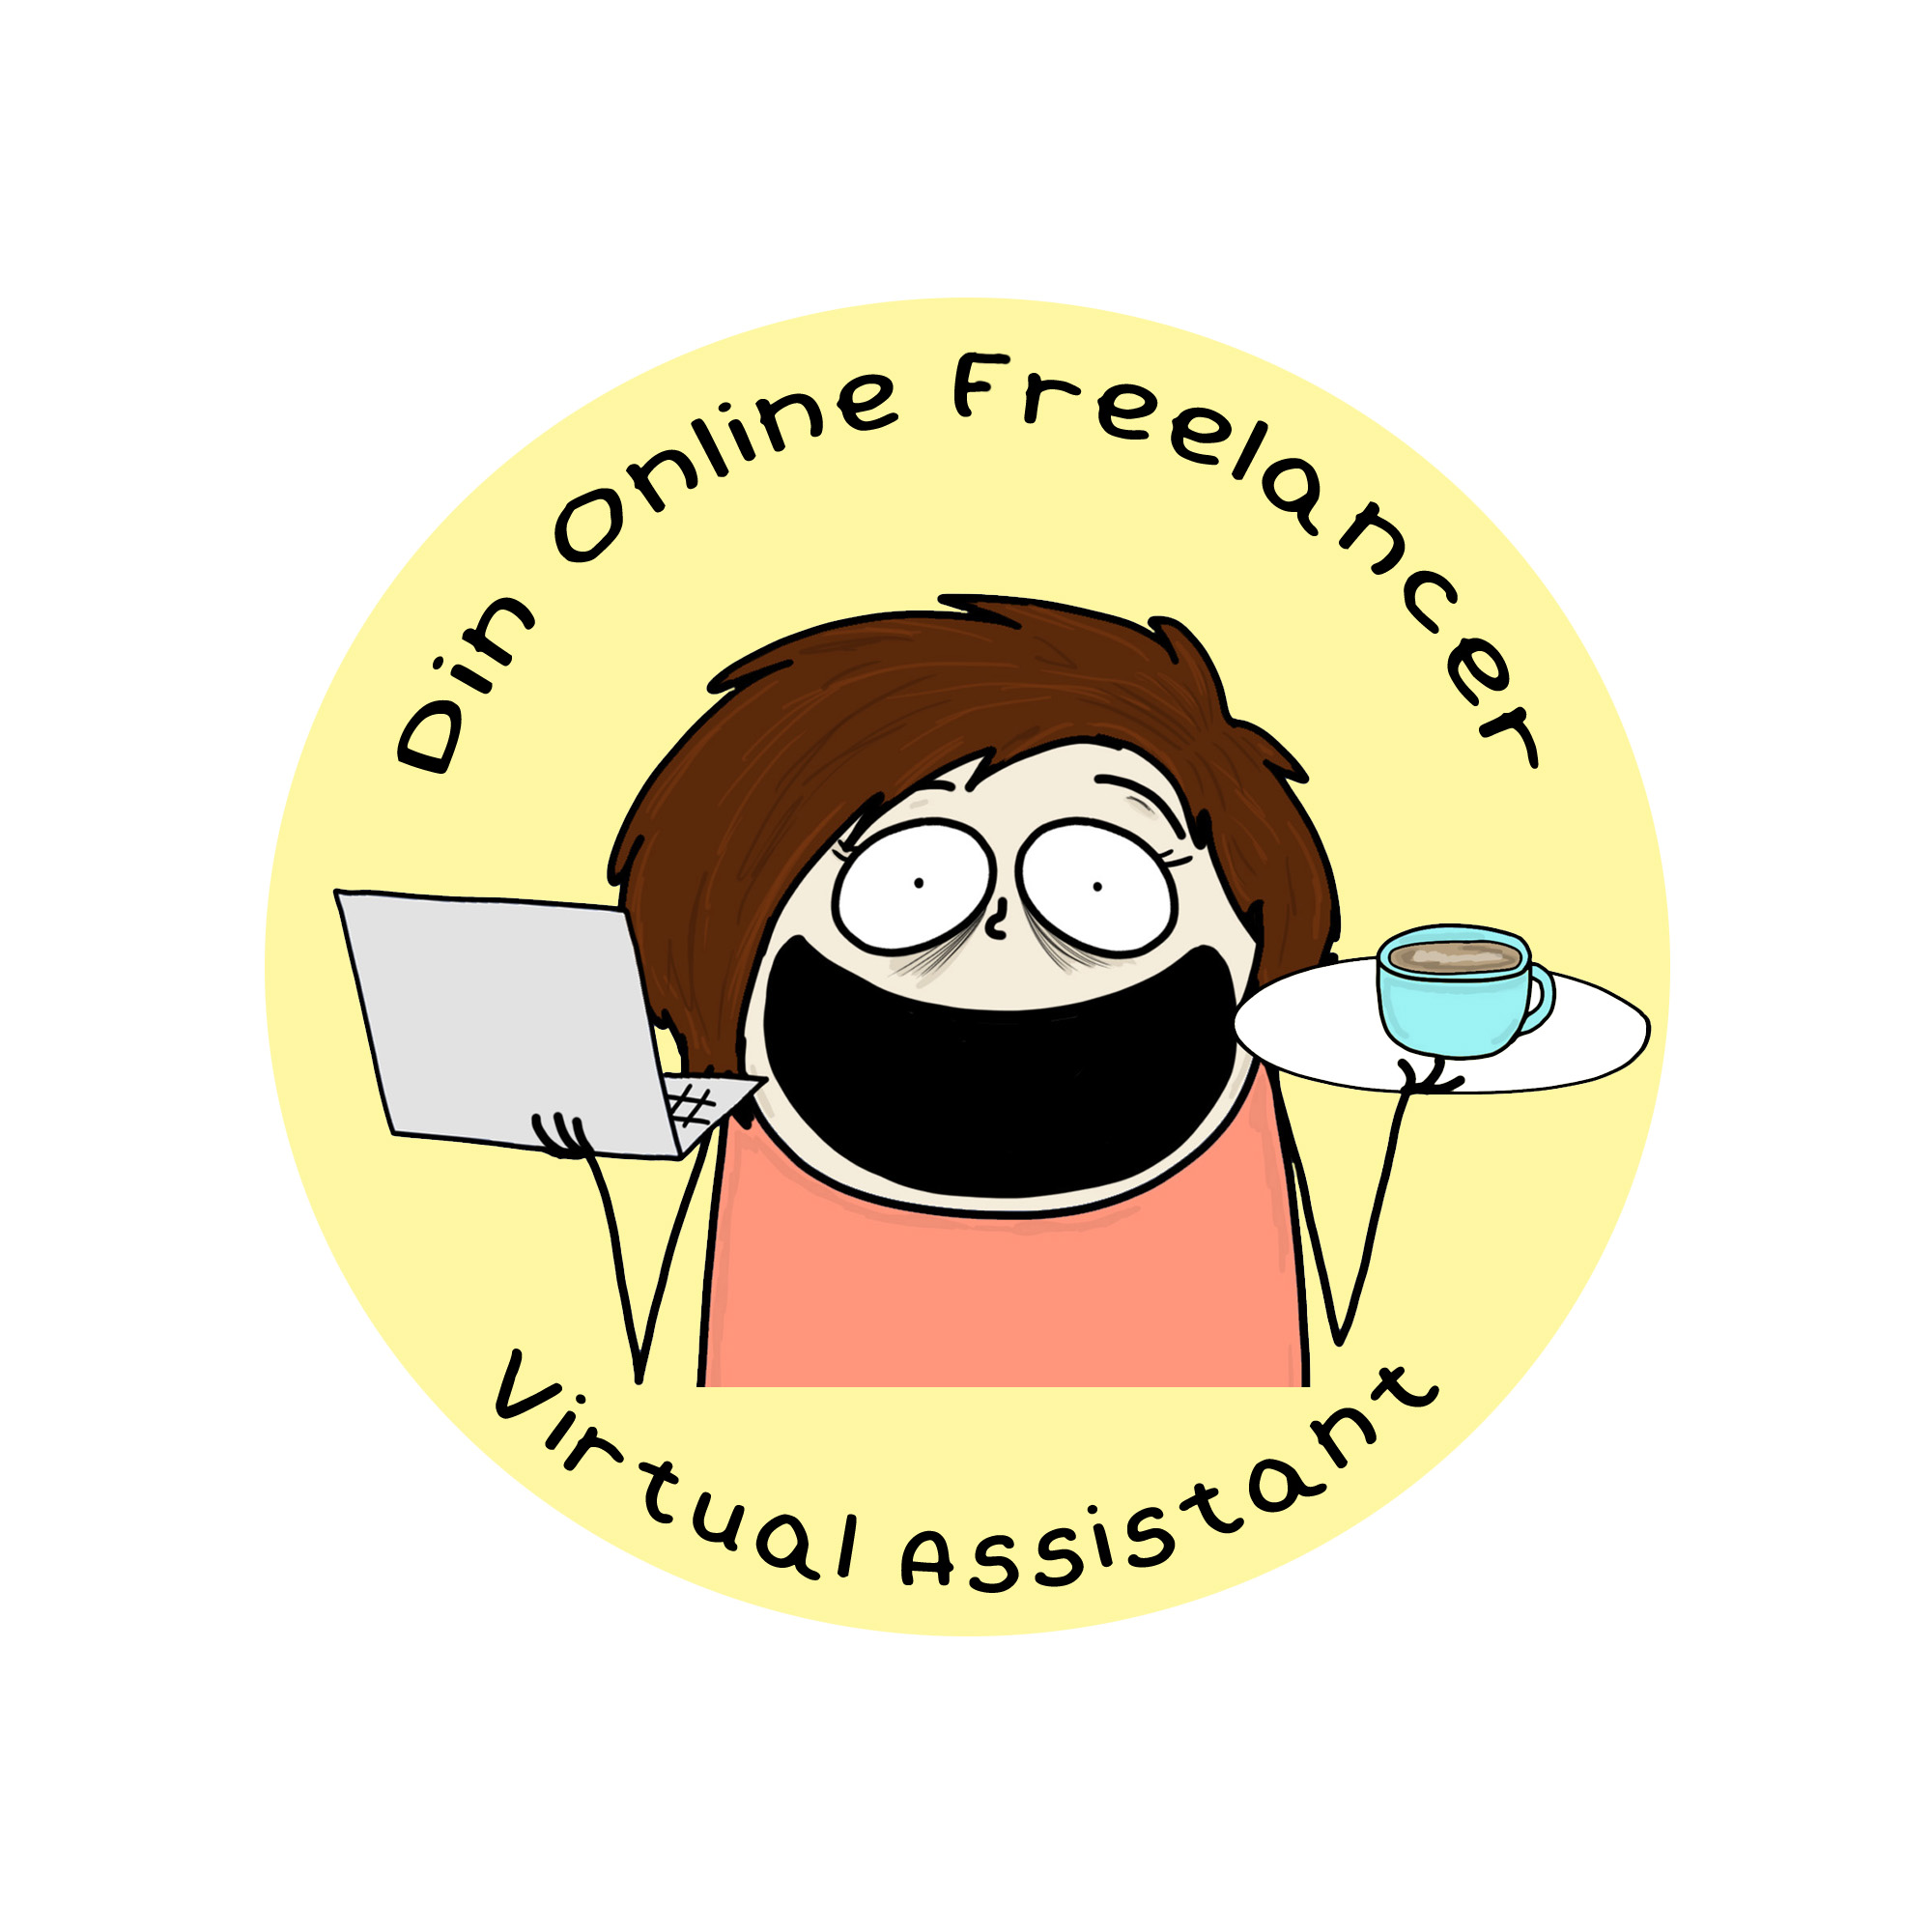 Virtuel Assistent dansk online freelancer_gul logo